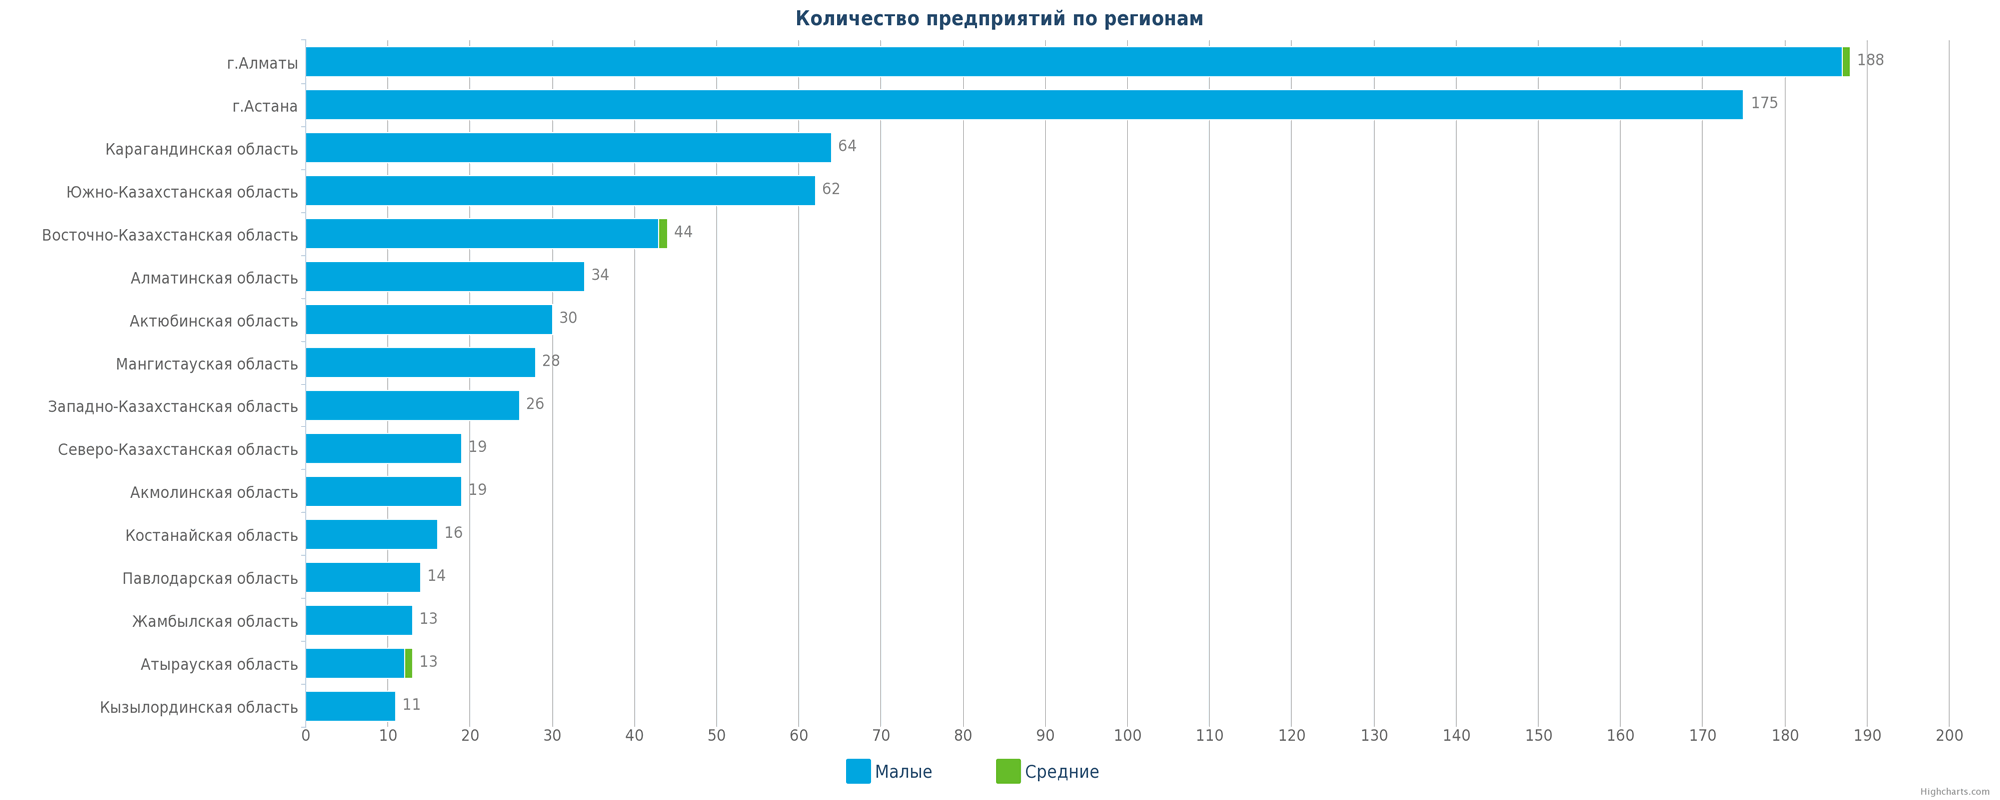 Количество новых предприятий в базе данных по регионам Казахстана